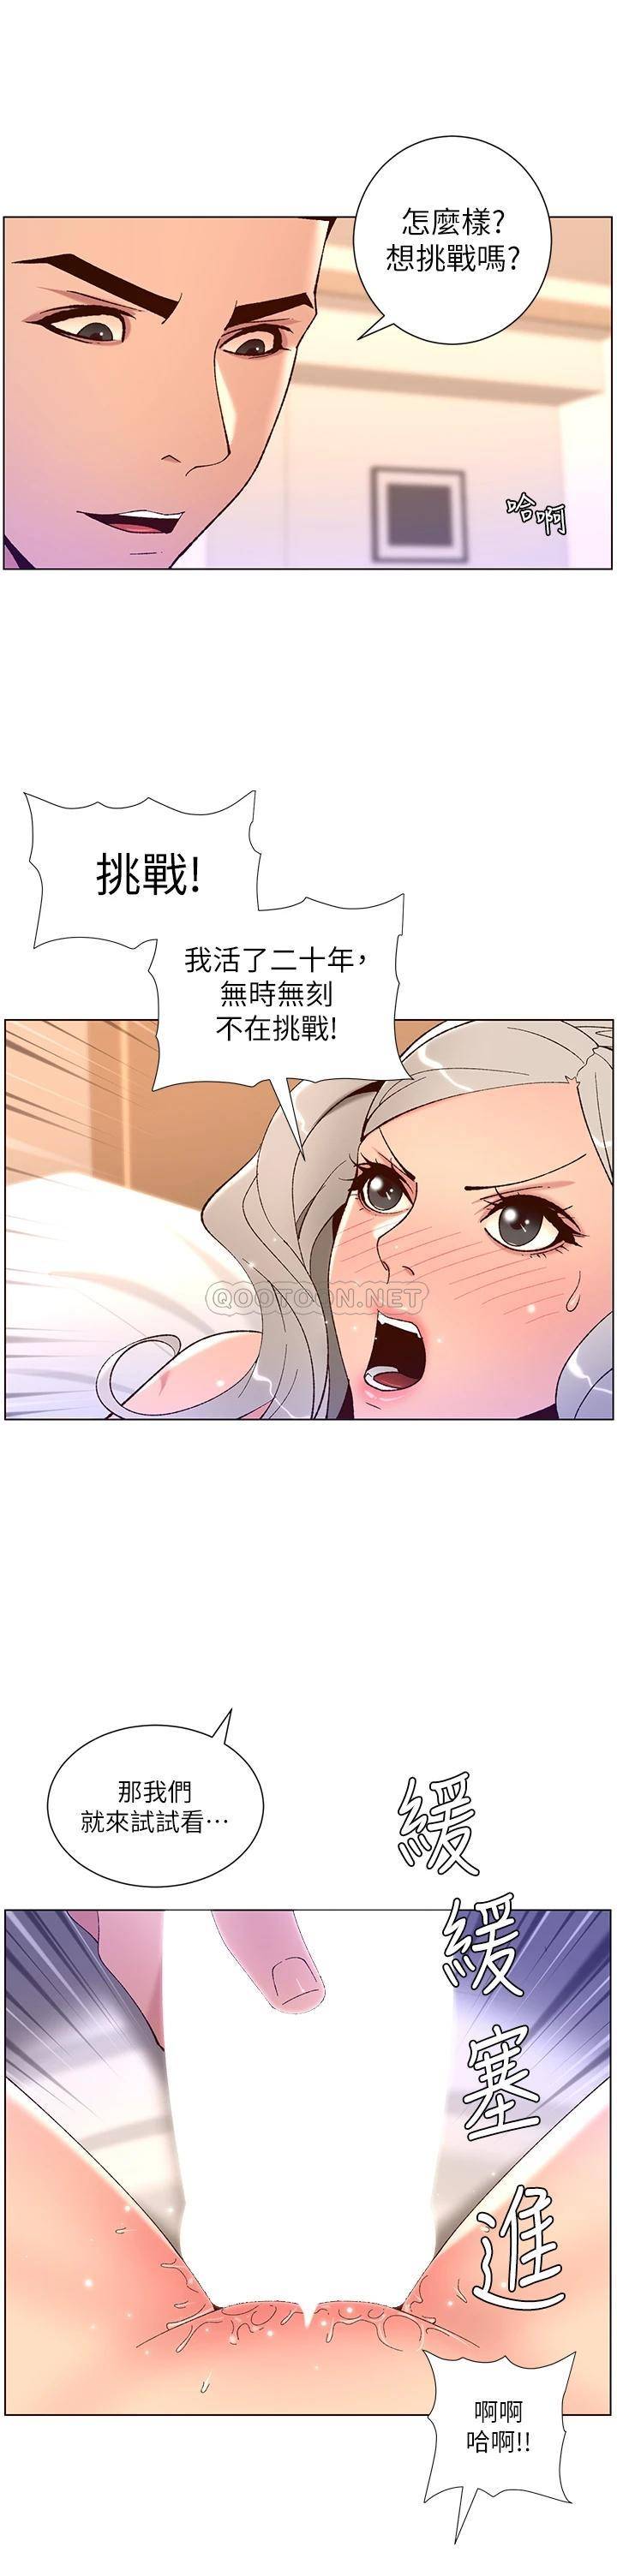 韩国污漫画 帝王App 第37话 第一次高潮的粉红鲍鱼 22